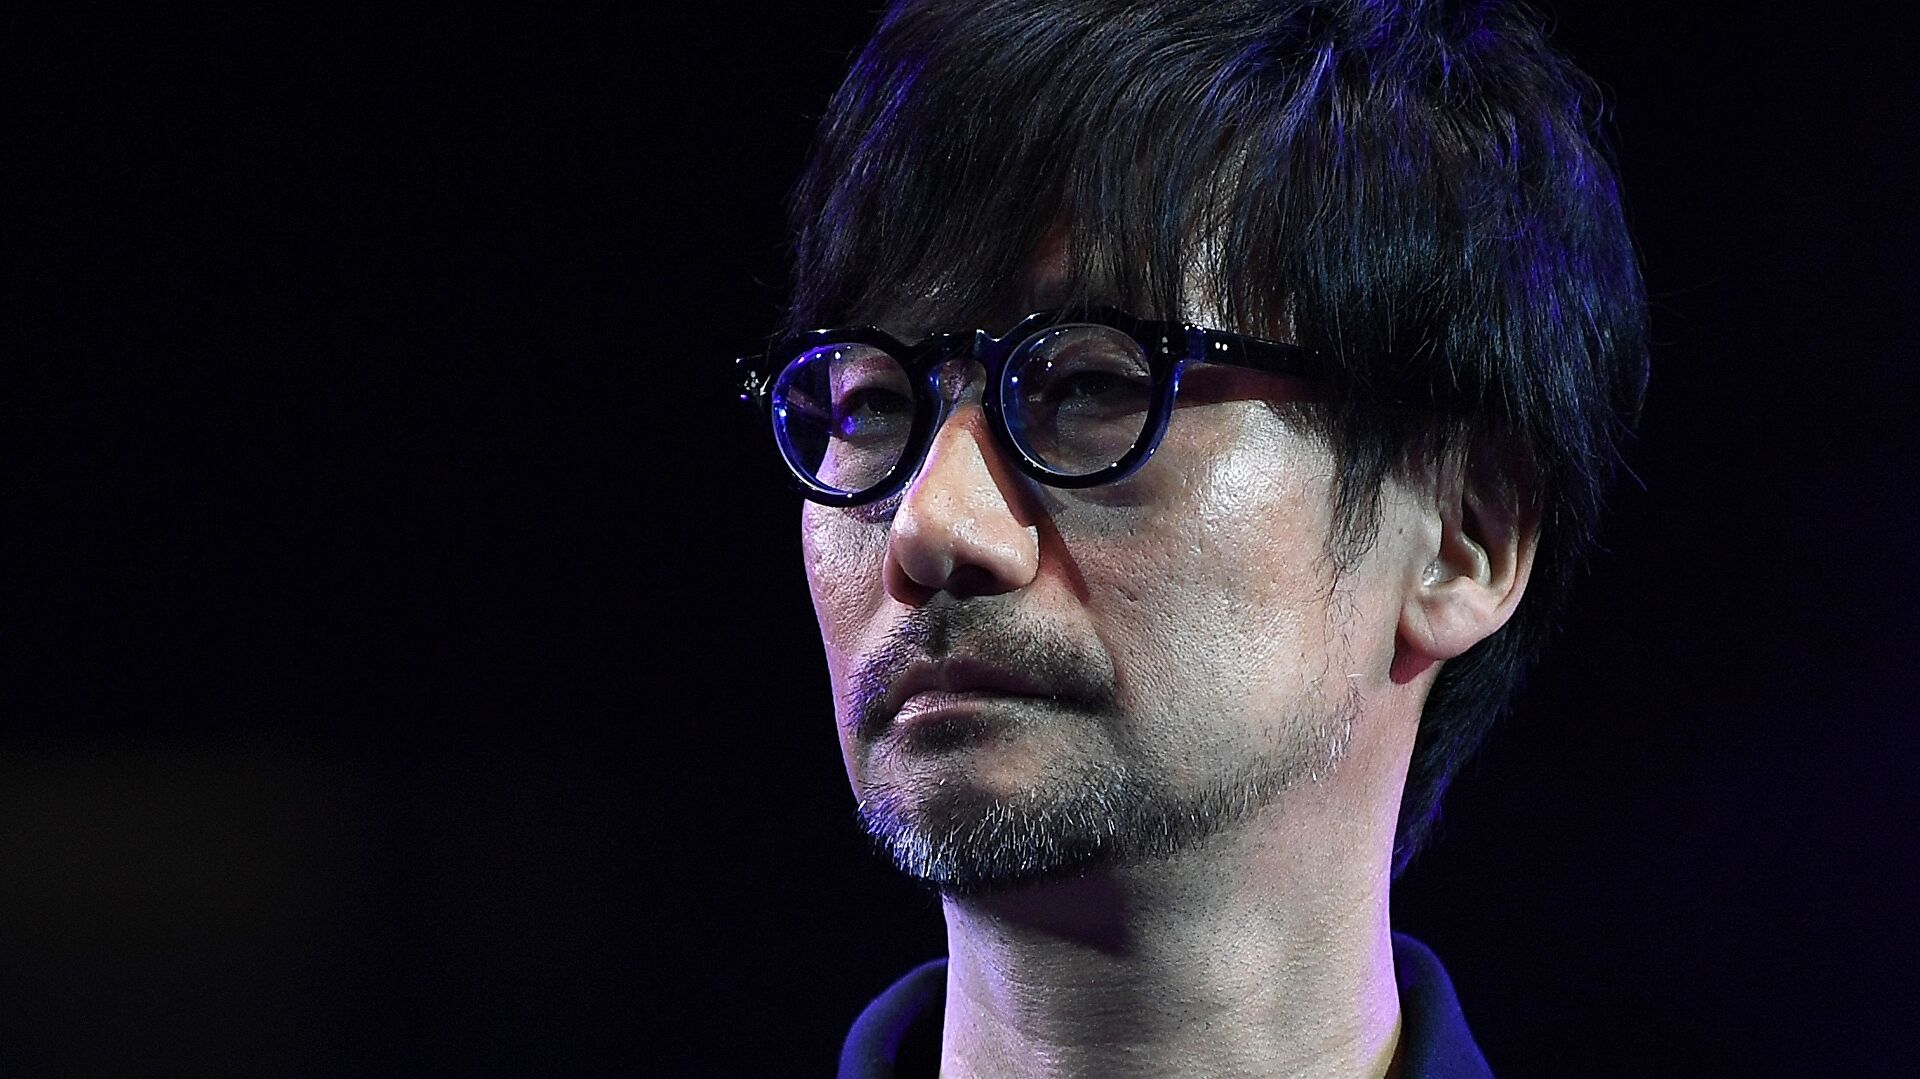 Xbox dan Hideo Kojima mengkonfirmasi kemitraan